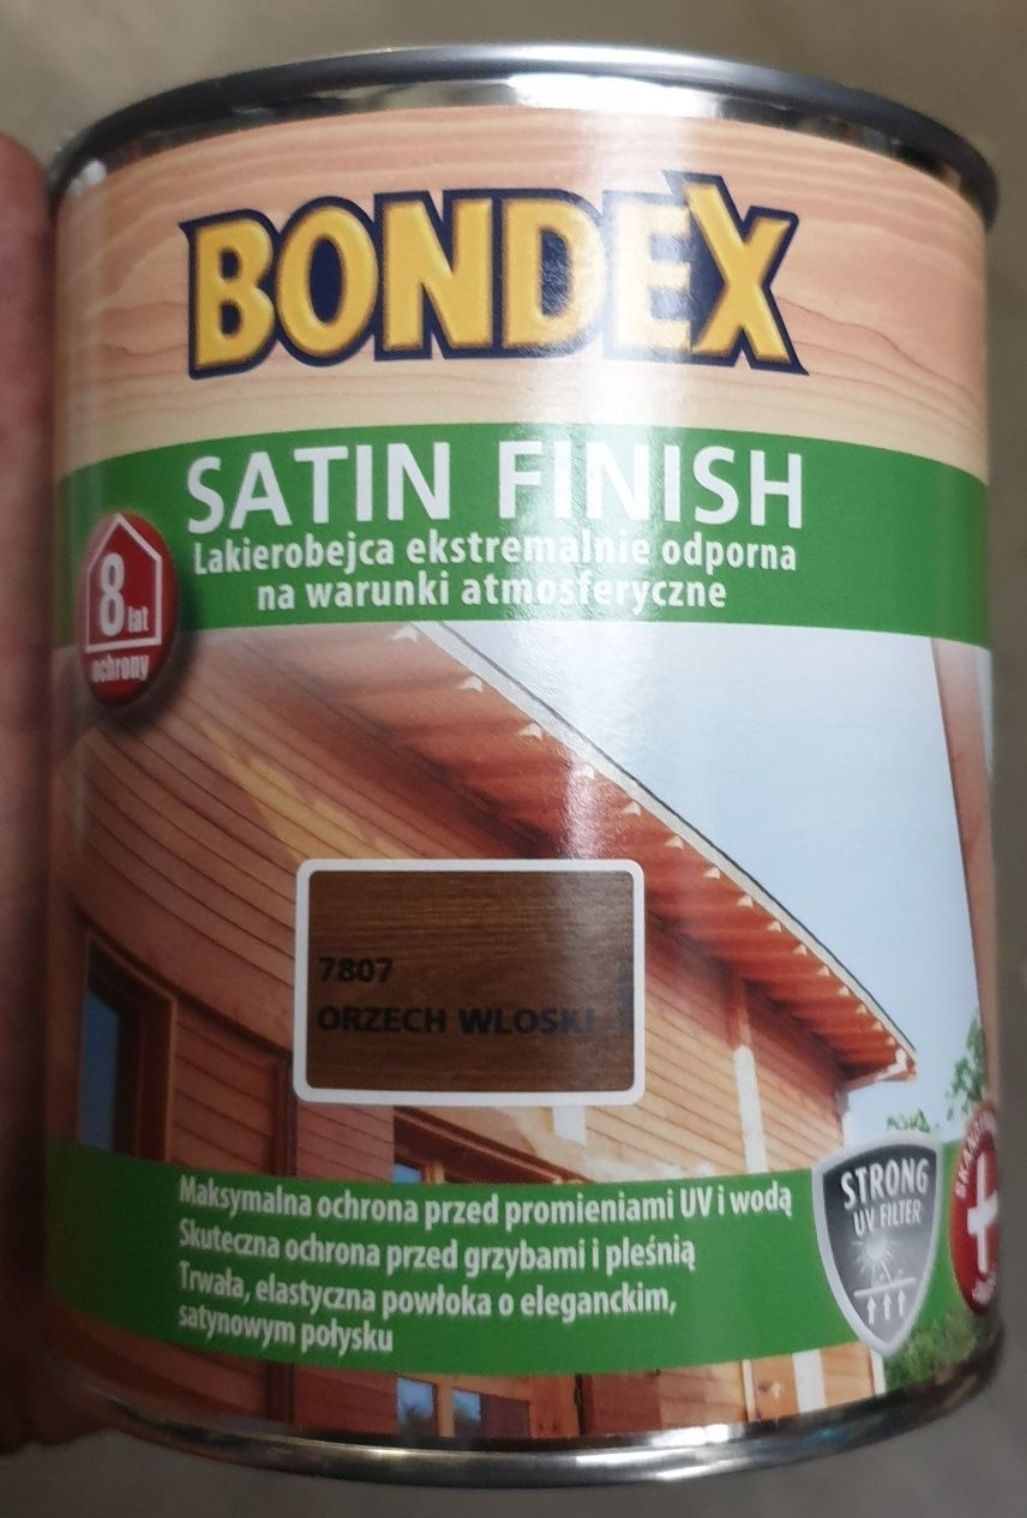 Bondex Satin Finish orzech wloski puszka 0,75L